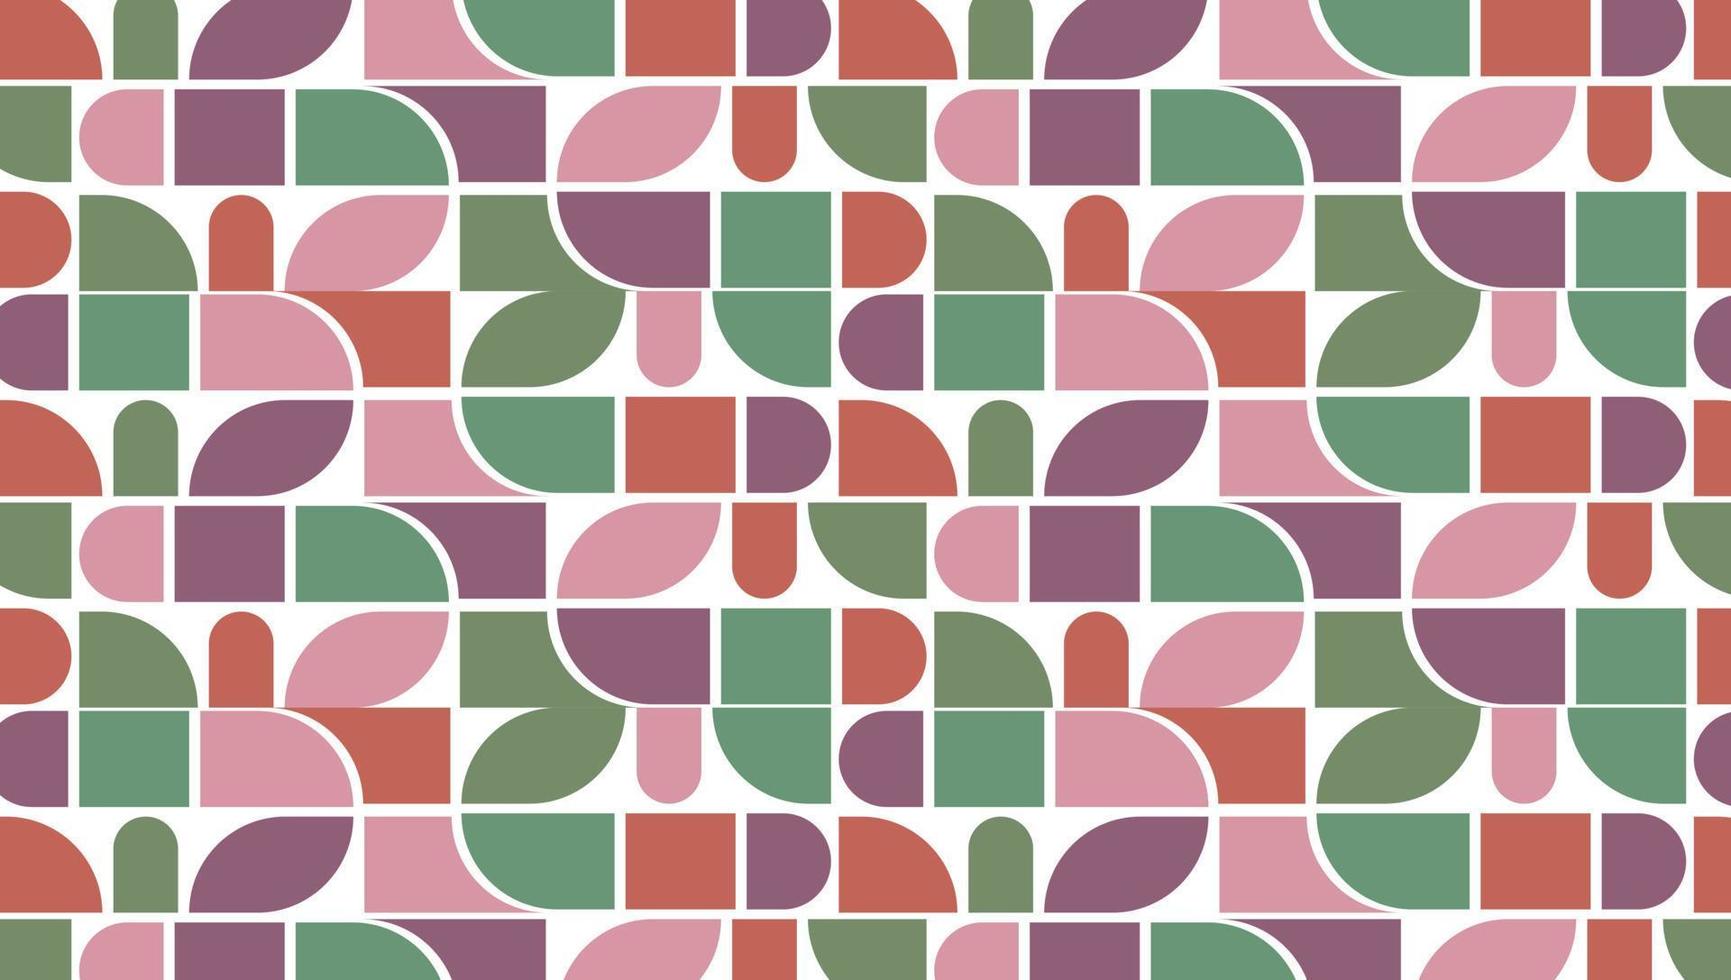 achtergrond eeuw meetkundig abstract vector naadloos patroon met gemakkelijk vormen en retro kleur palet. gemakkelijk samenstelling voor web ontwerp, branding, uitnodigingen, affiches, textiel en behang.